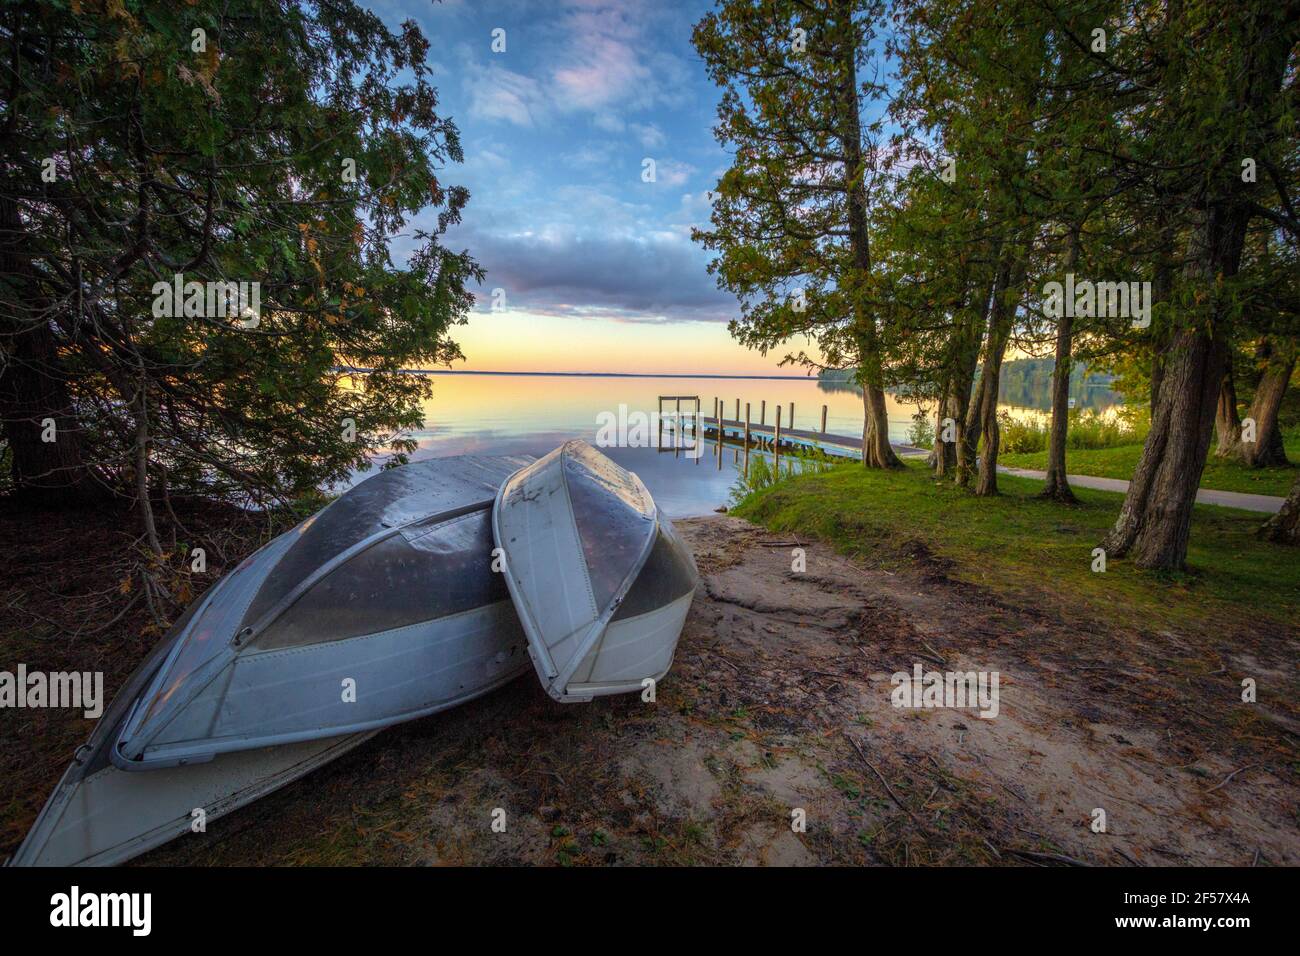 Barques sur Sunset Lake. Groupe de barques d'aluminium sur la plage d'un lac au lever du soleil avec un quai en bois. Parc national d'Indian Lake, Manistique, Michigan. Banque D'Images